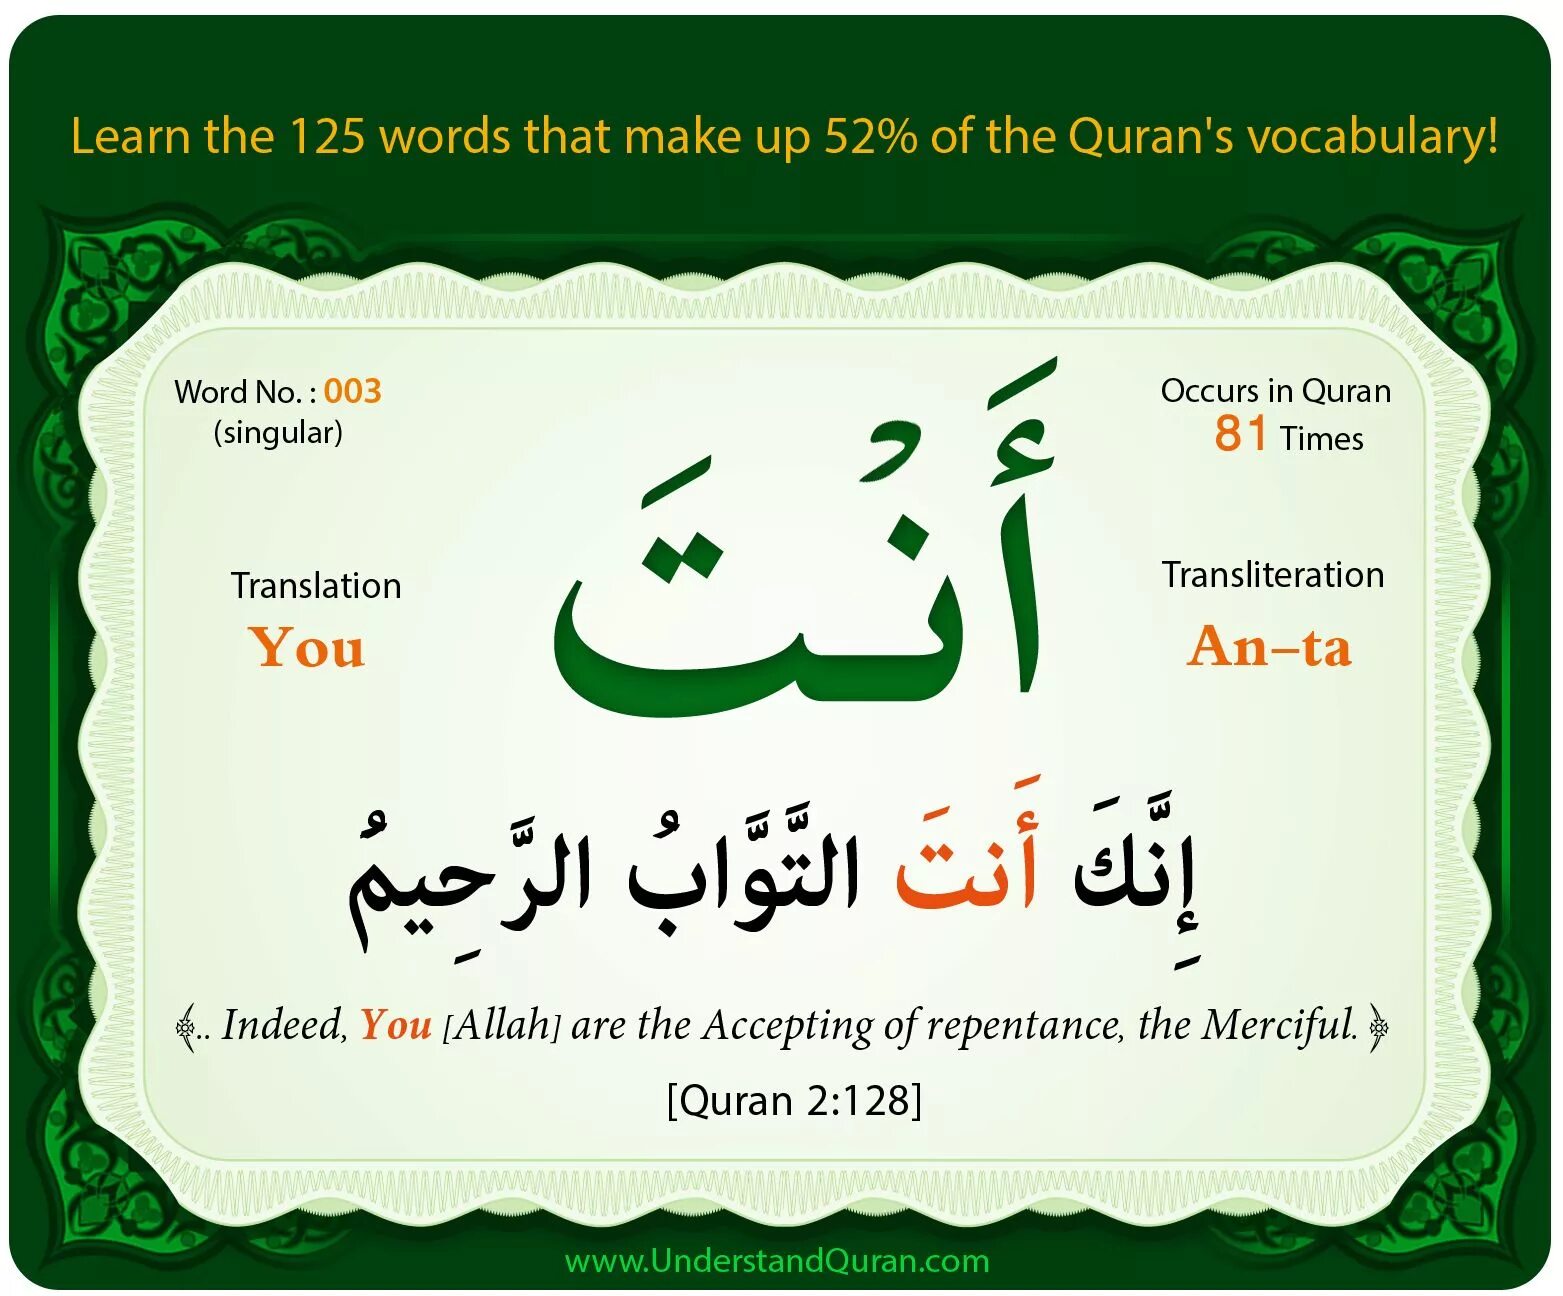 Знание арабского языка. Слово Коран на арабском. Фразы из Корана на арабском. Дуа на арабском языке. Цитаты из Корана на арабском языке.